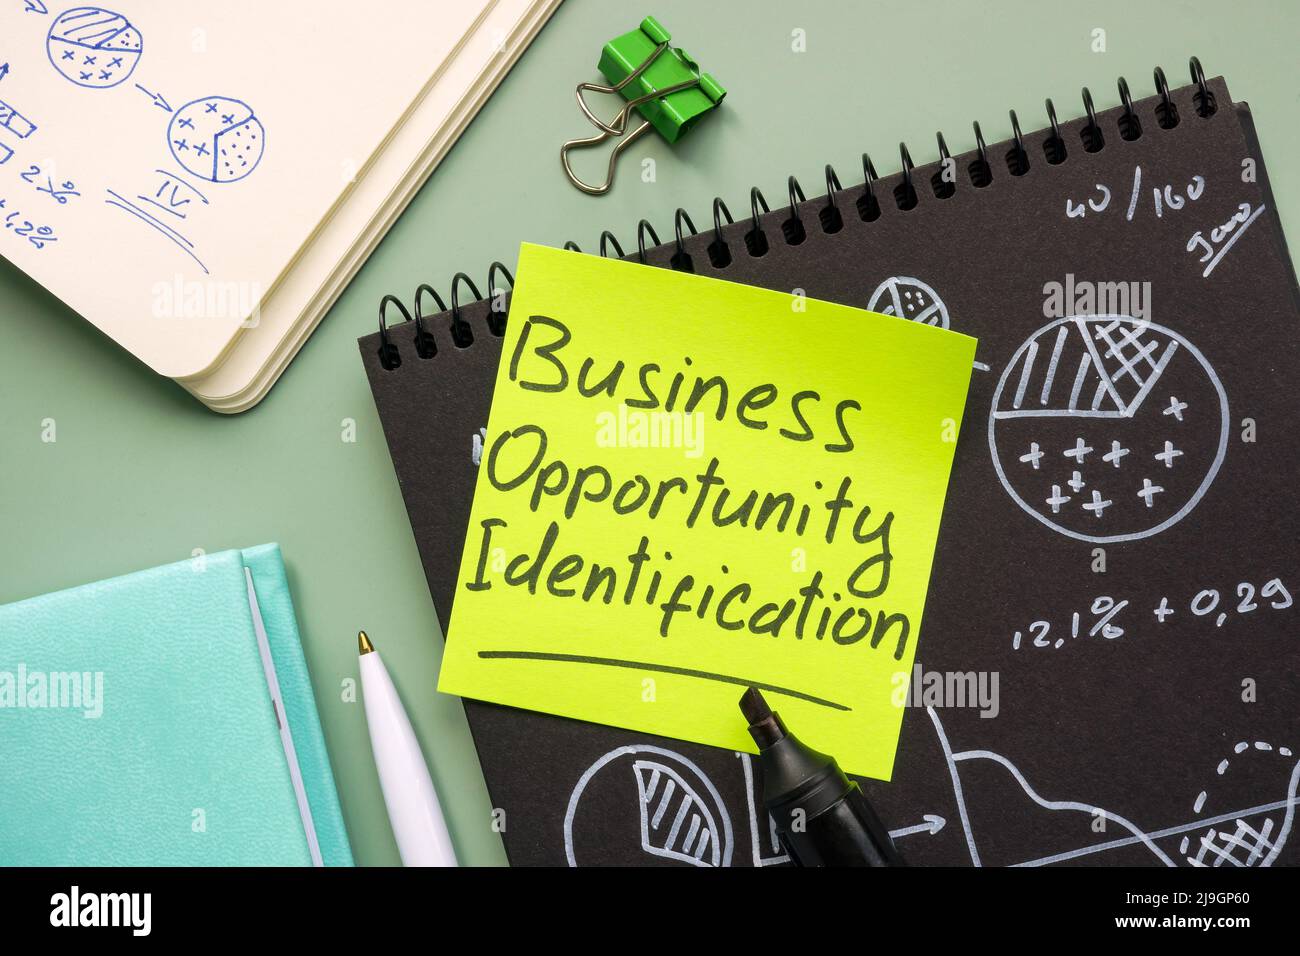 Aufkleber mit der Aufschrift Business Opportunity Identification. Stockfoto